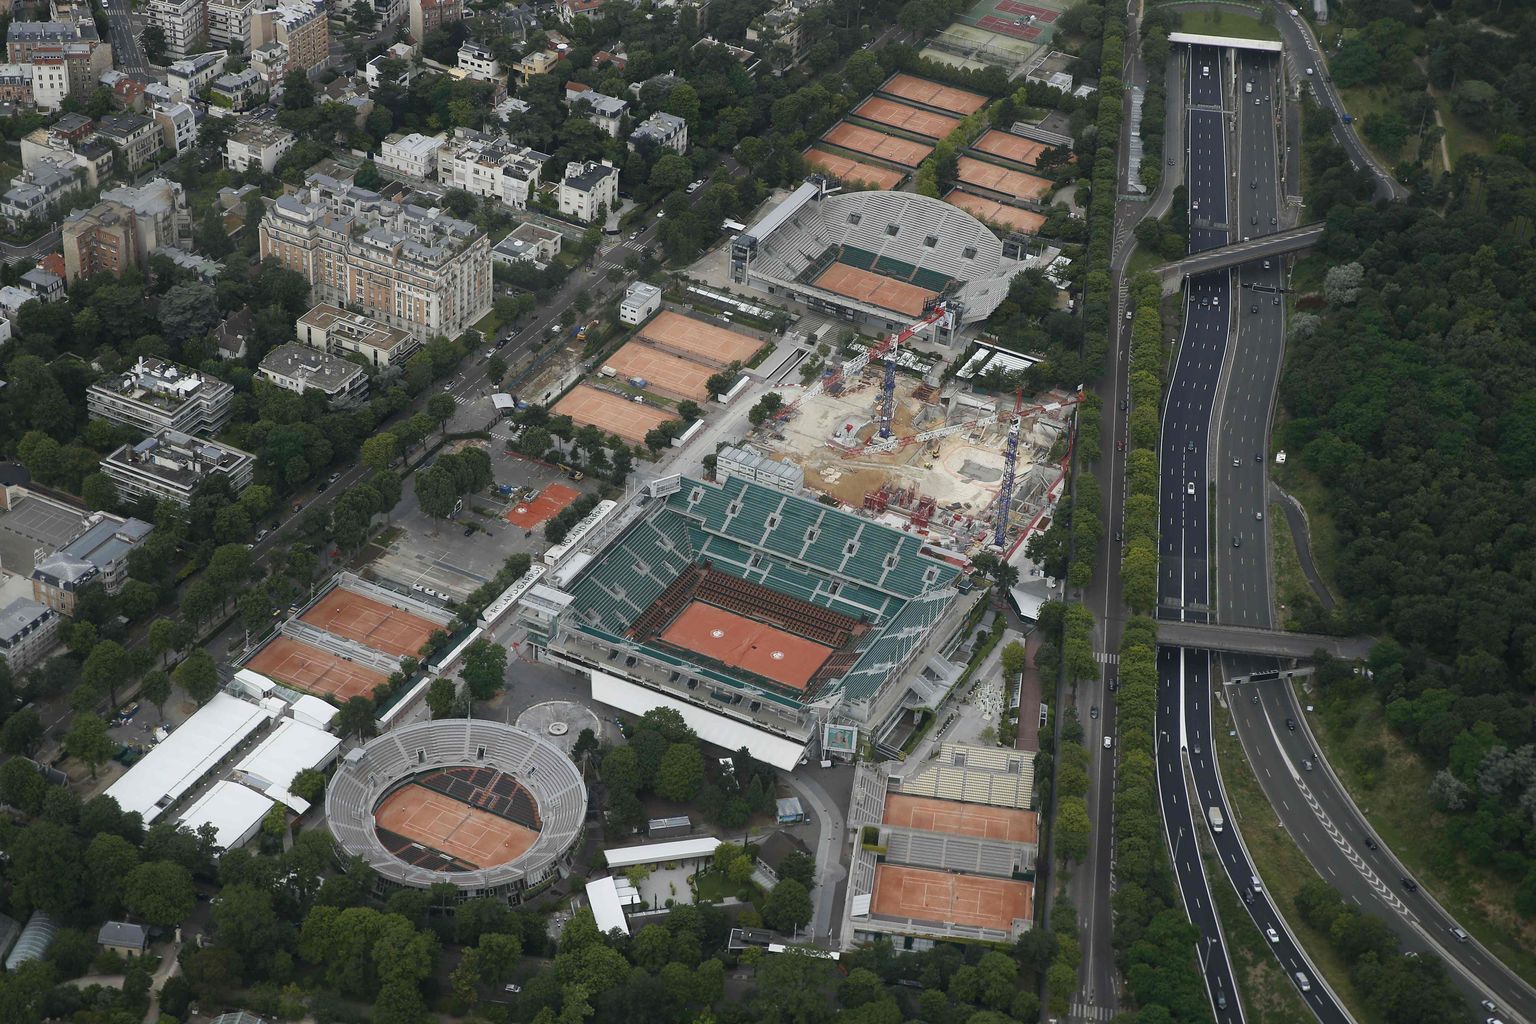 ROLAND GARROS: Prantsusmaa lahtiseid võõrustav tennisemeka ilmutab väsimuse märke, aga plaanide järgi viiakse 2020. aastaks lõpule jõuline iluoperatsioon, mis muudab kompleksi hoopis kütkestavamaks paigaks.